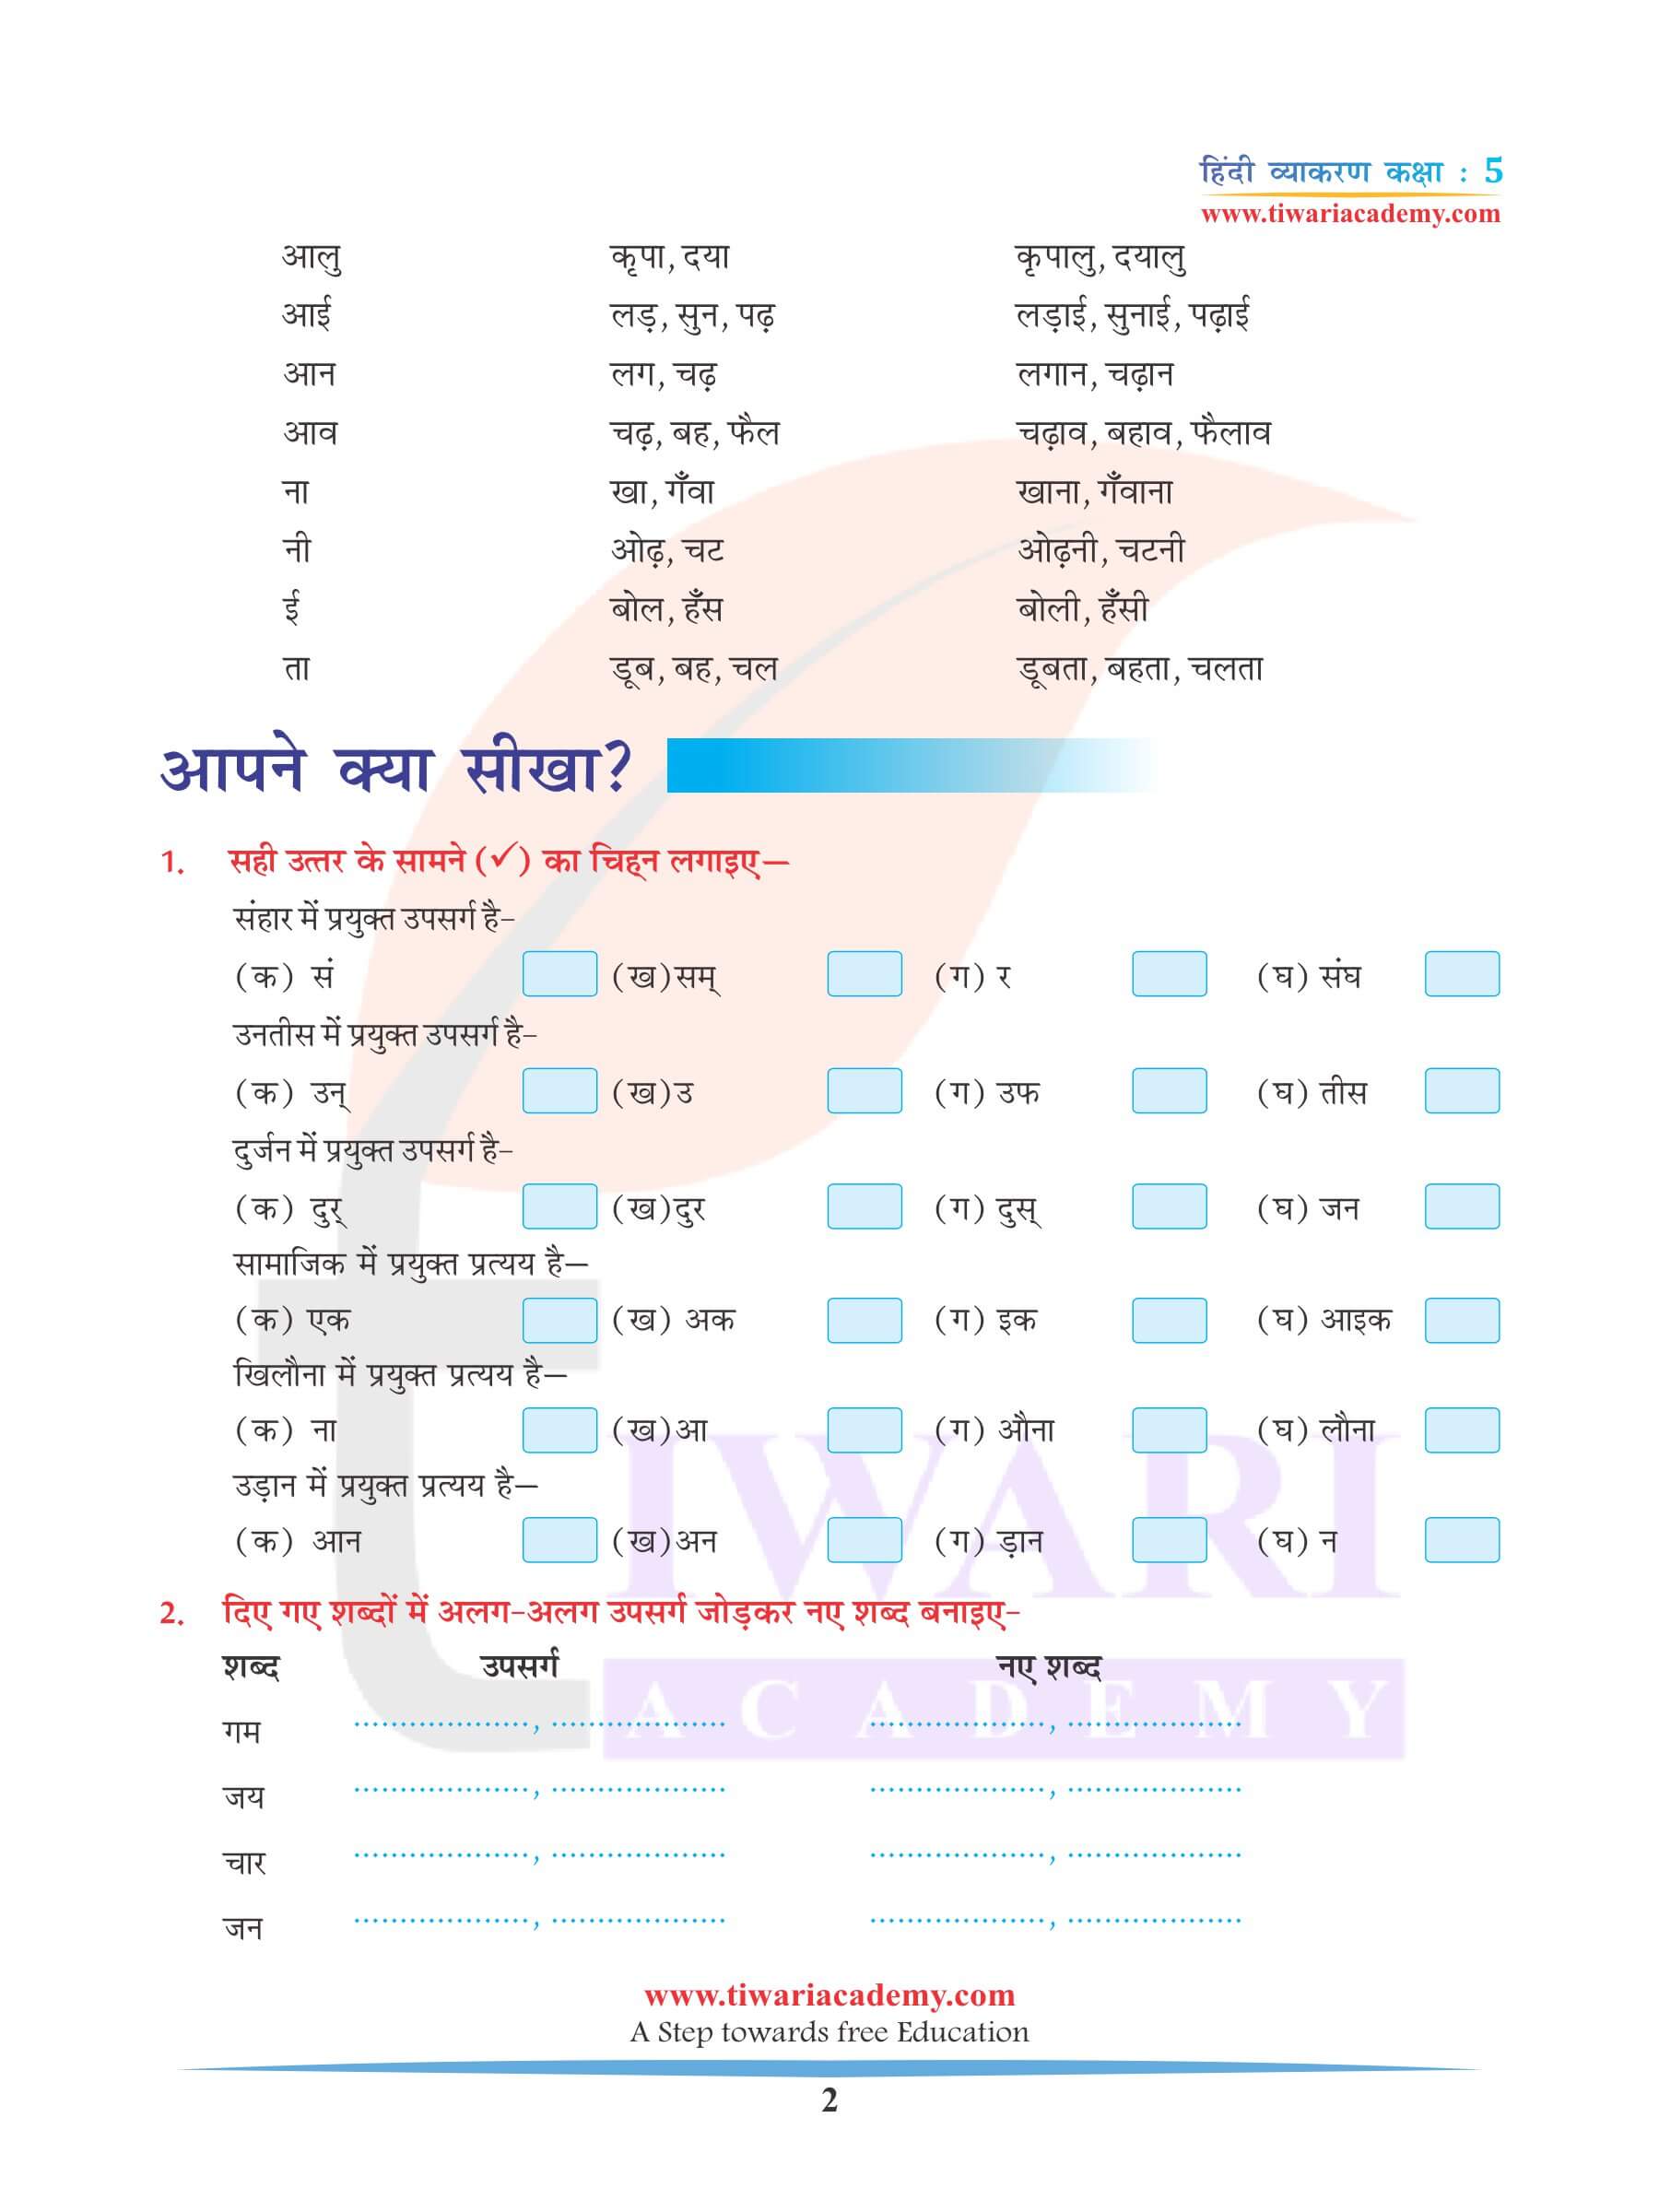 कक्षा 5 हिंदी व्याकरण अध्याय 12 शब्द निर्माण के उदाहरण